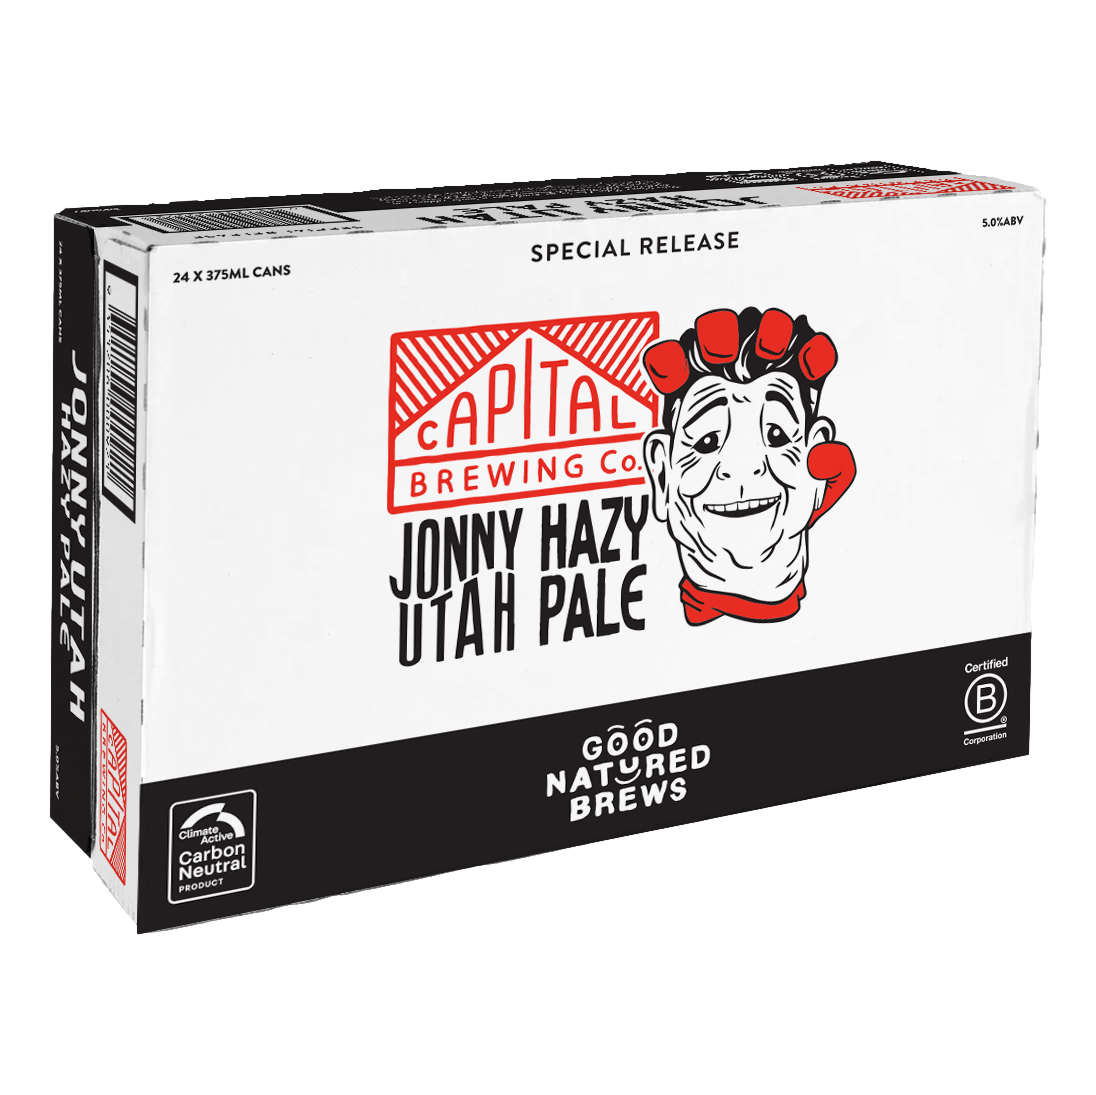 Capital Brewing Jonny Utah Hazy Pale Ale 375ml Can Case of 16